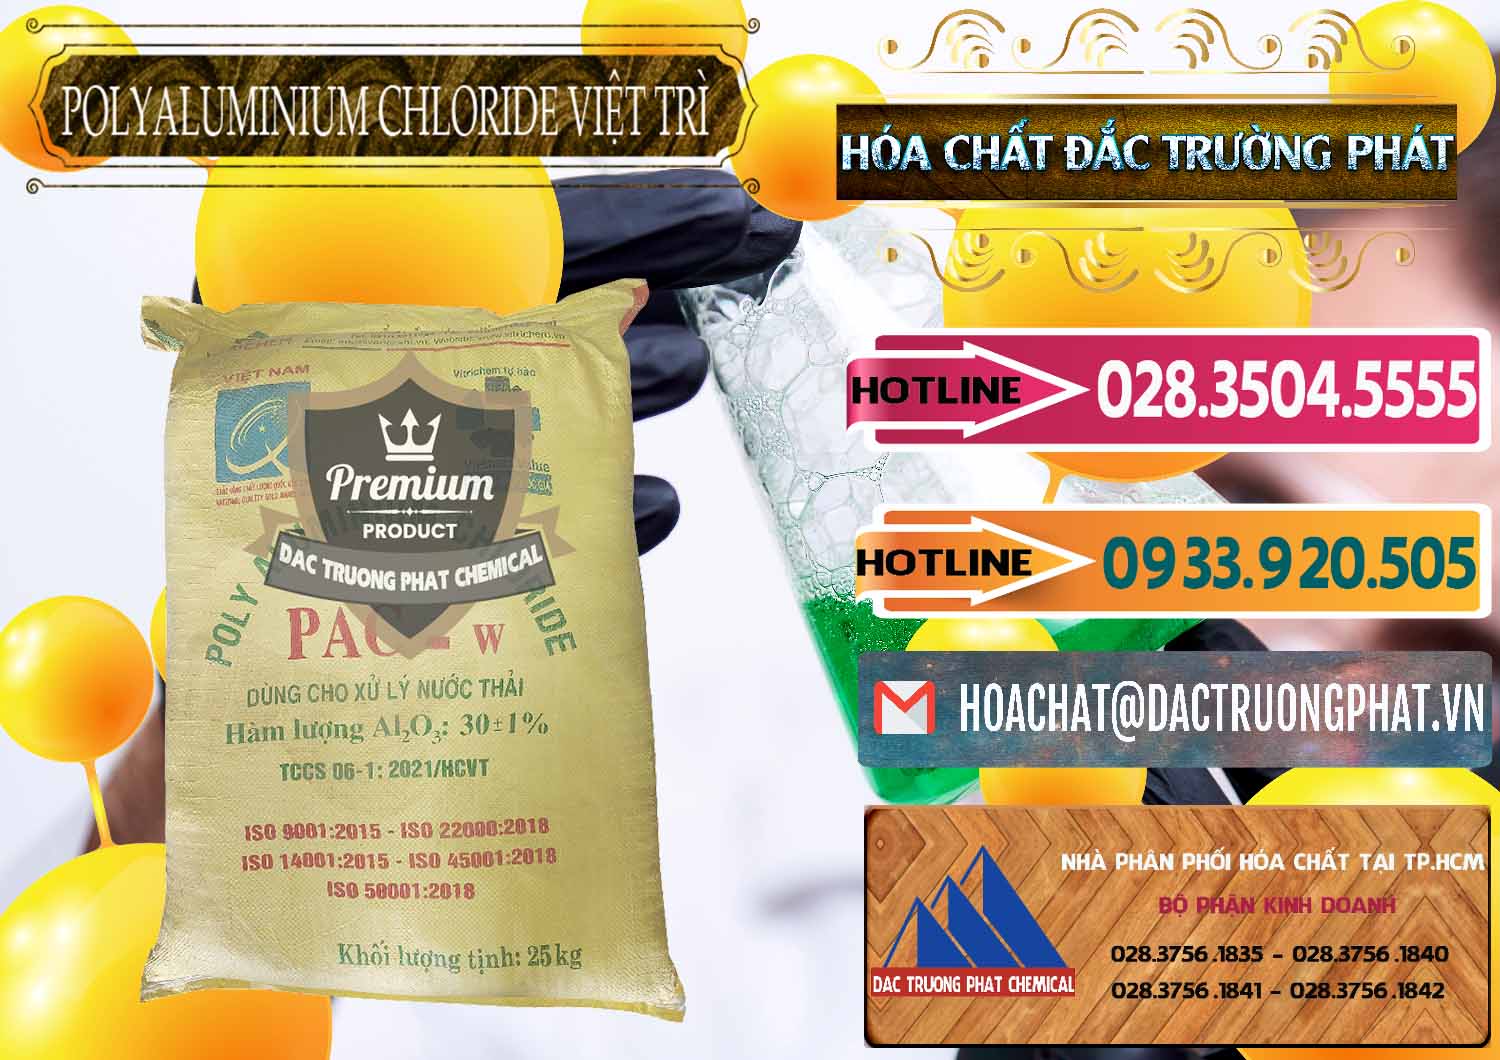 Chuyên kinh doanh & bán PAC - Polyaluminium Chloride Việt Trì Việt Nam - 0487 - Công ty kinh doanh - phân phối hóa chất tại TP.HCM - dactruongphat.vn